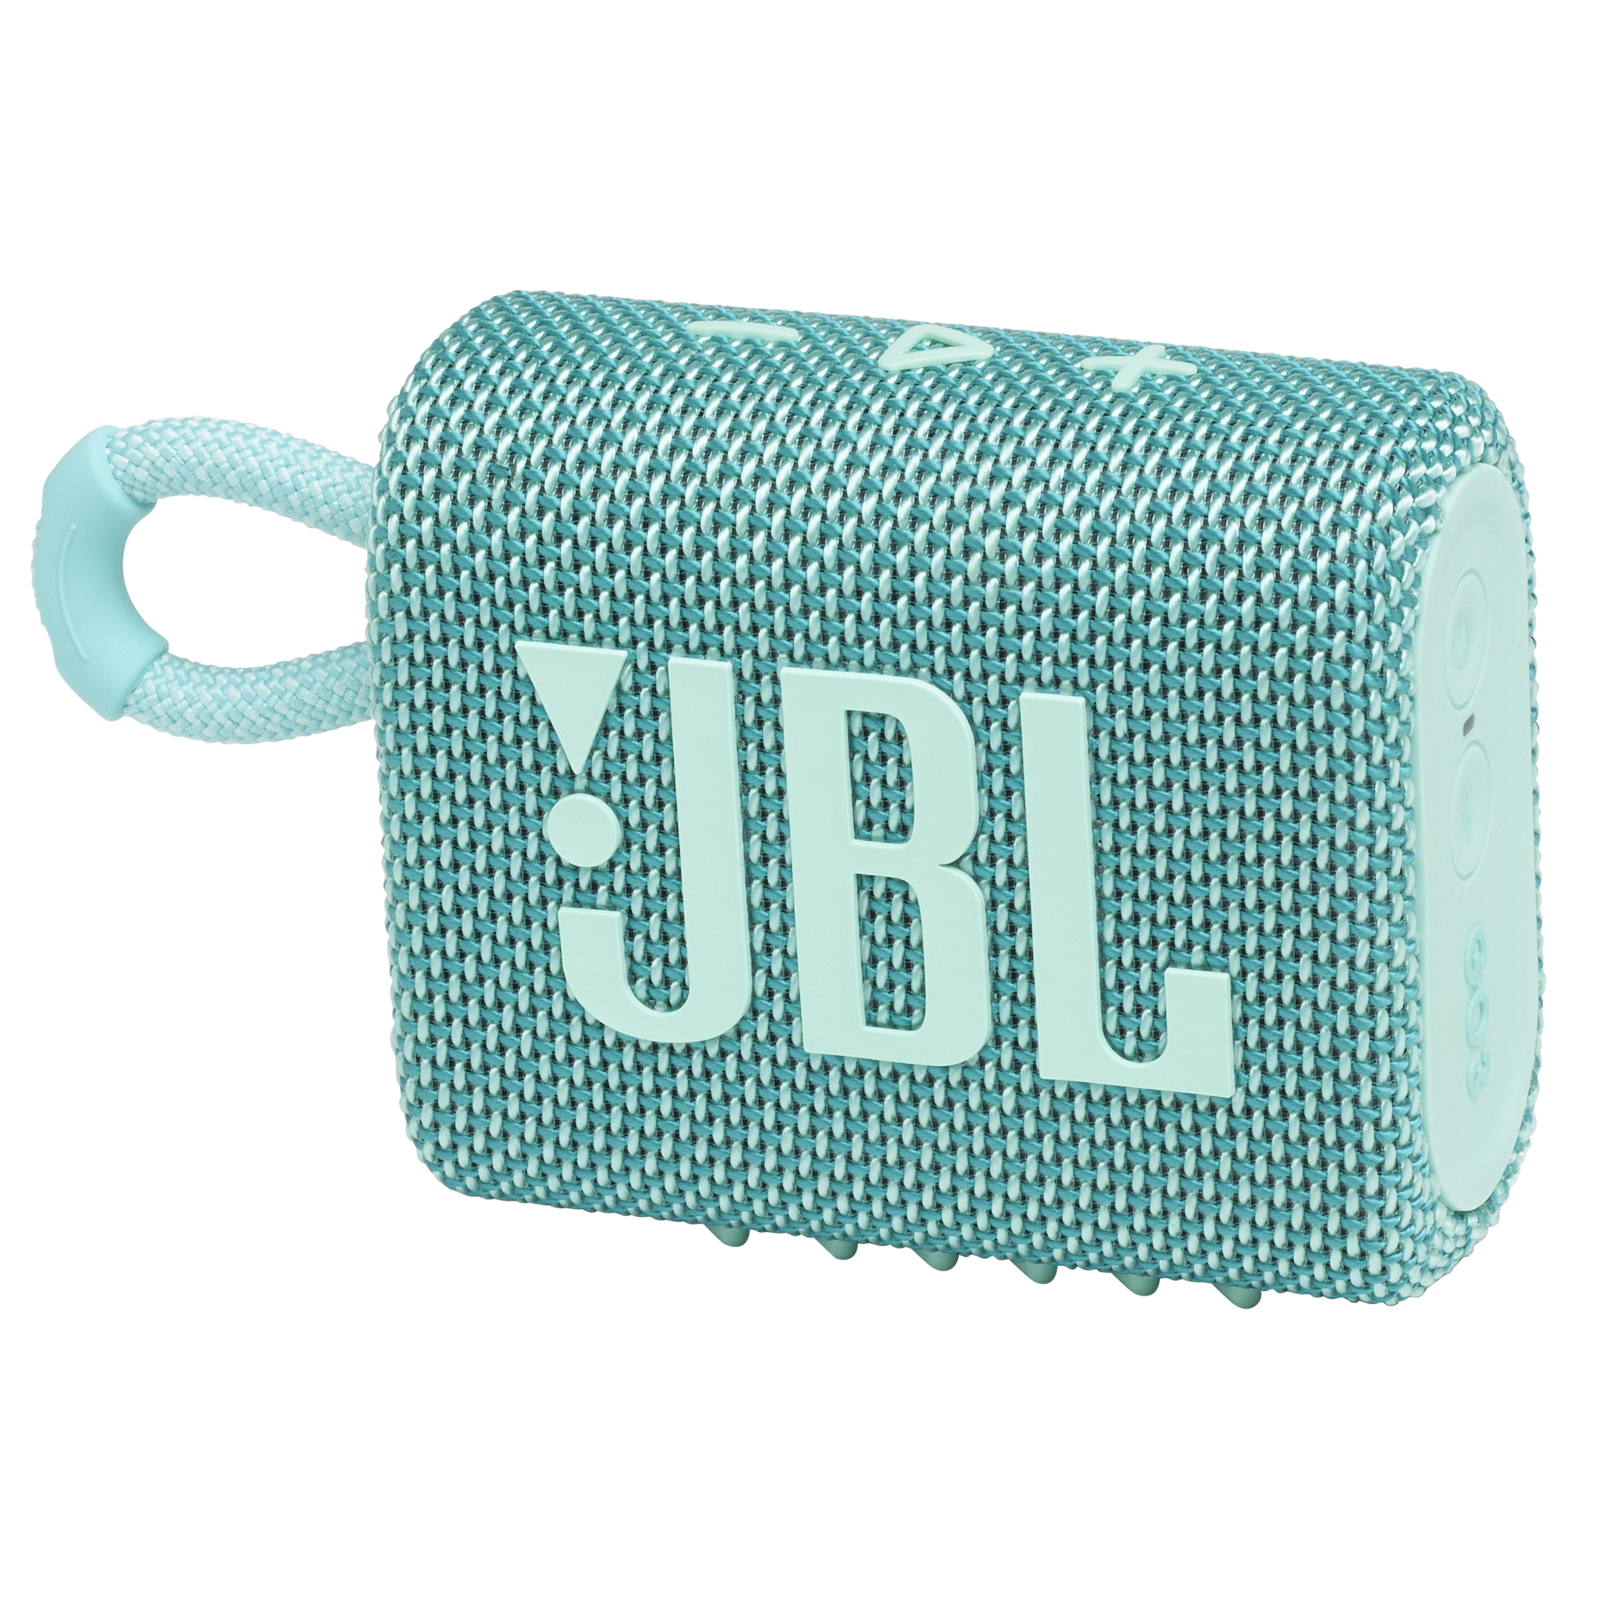 JBL Go 3 Portable Waterproof Bluetooth Speaker, Teal - image 1 of 9